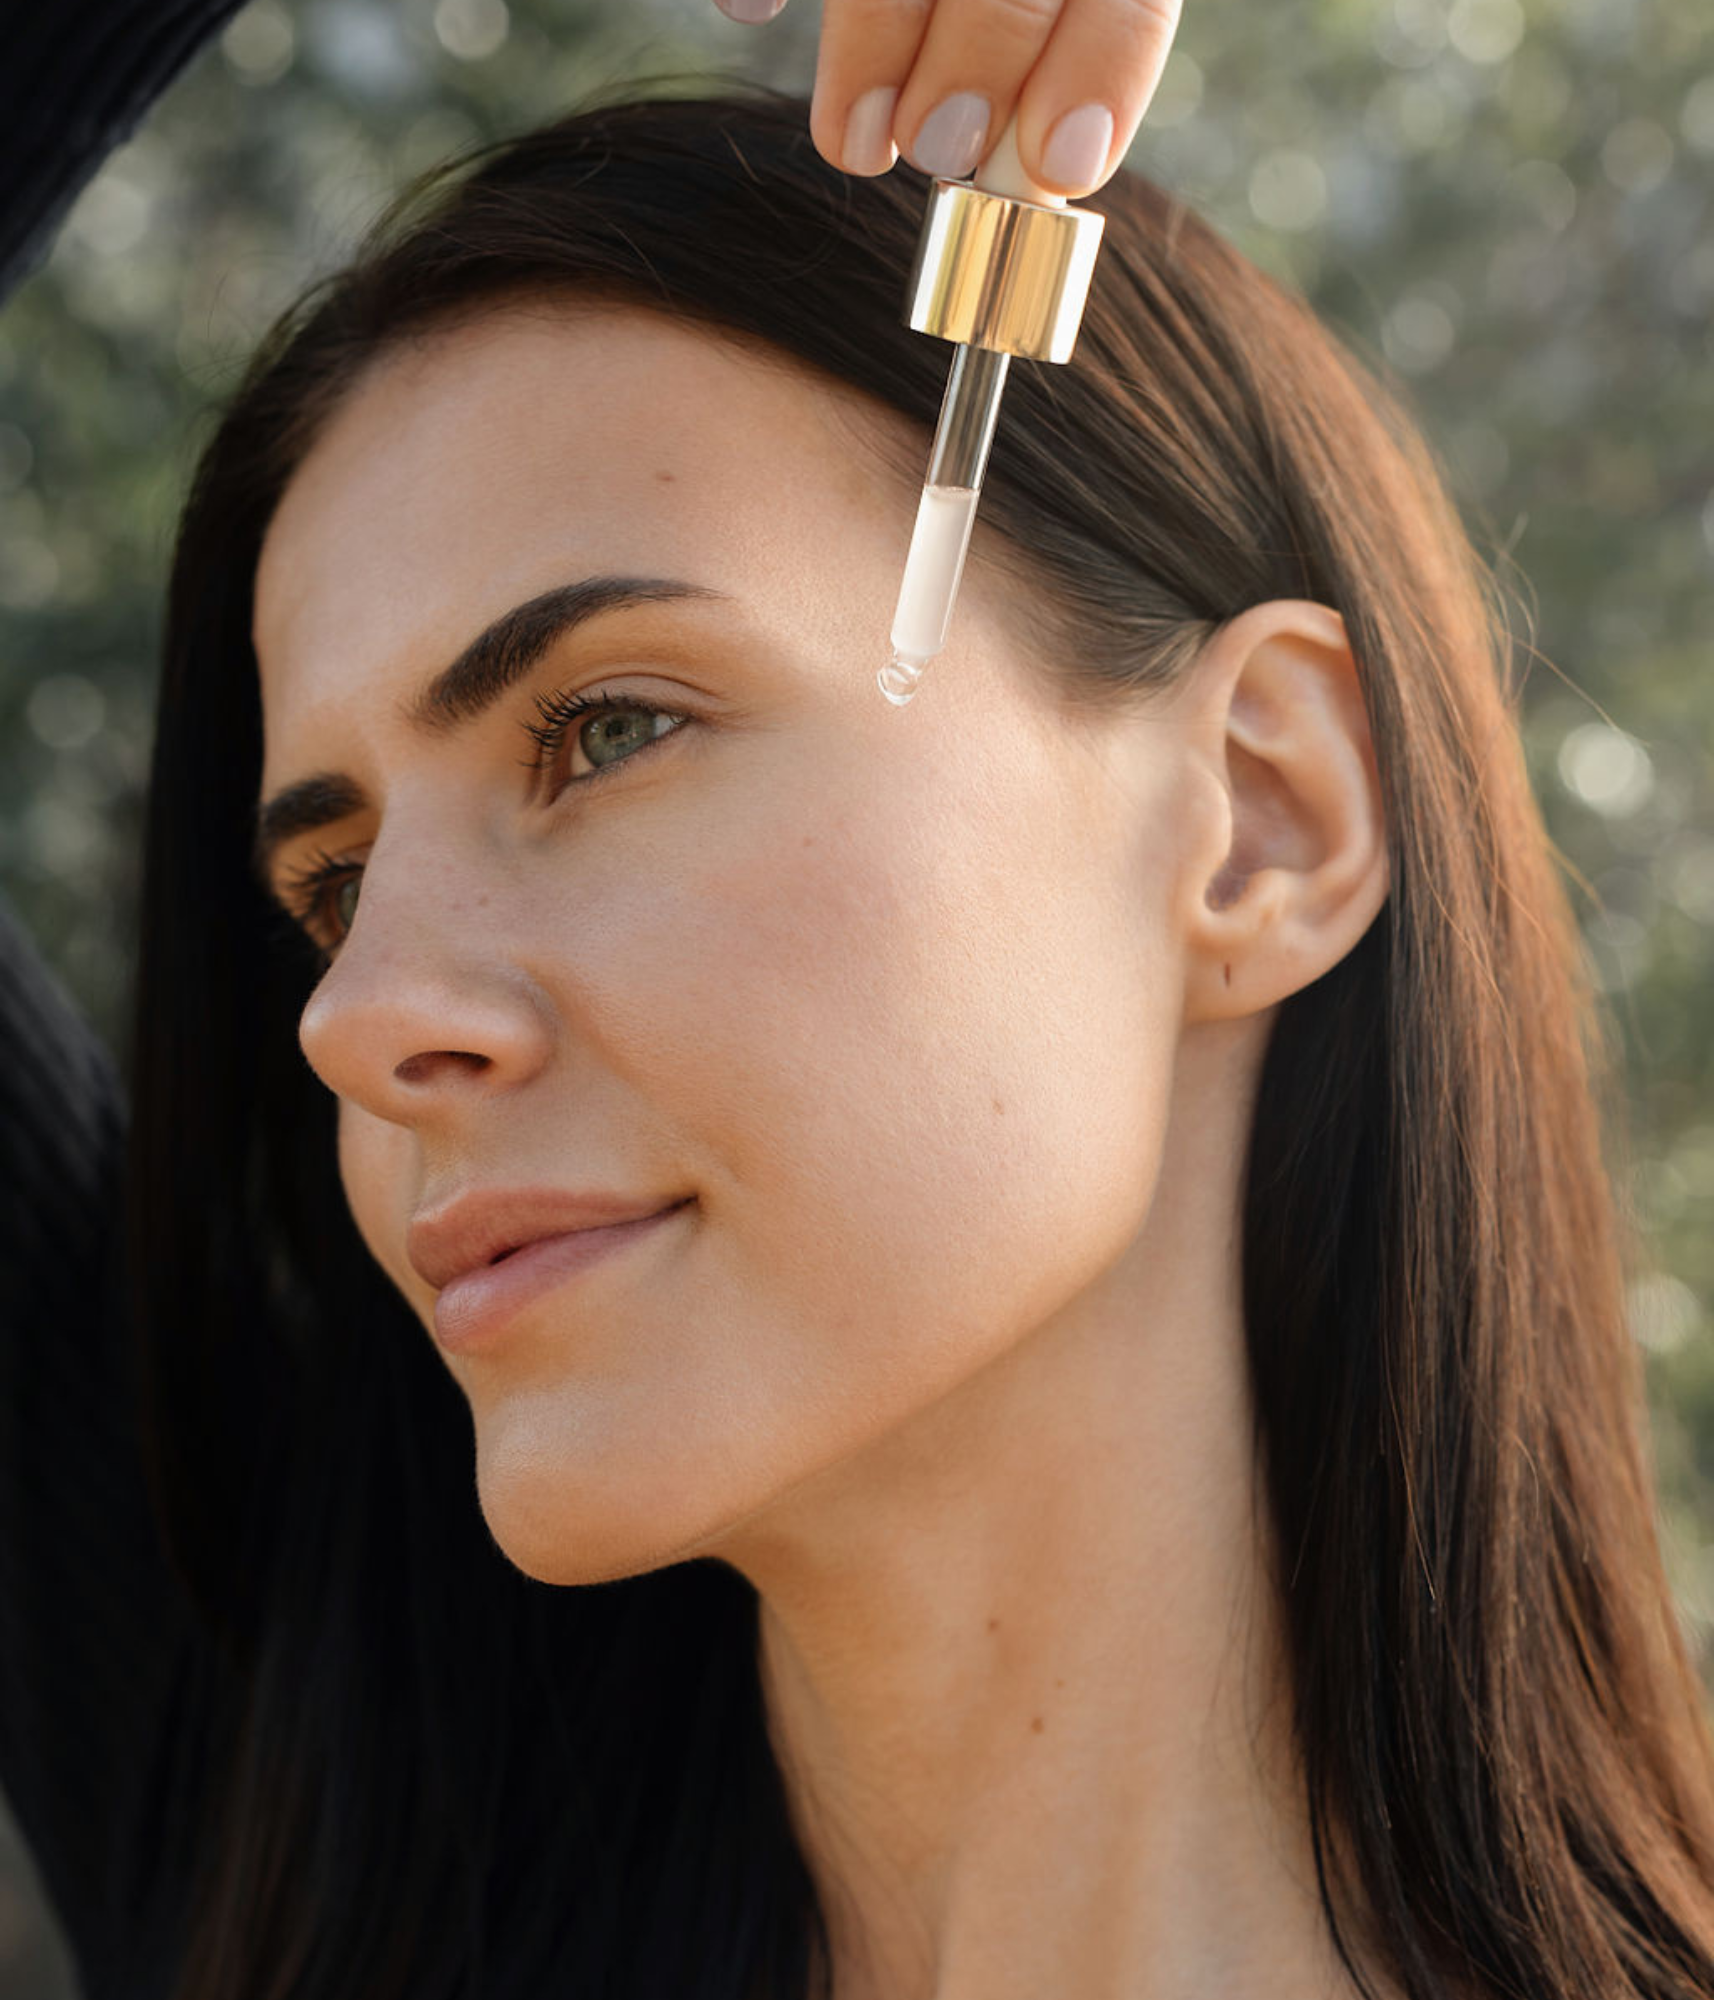 Femme aux cheveux bruns de profil, tenant une pipette avec un liquide transparent sur le côté de son visage.